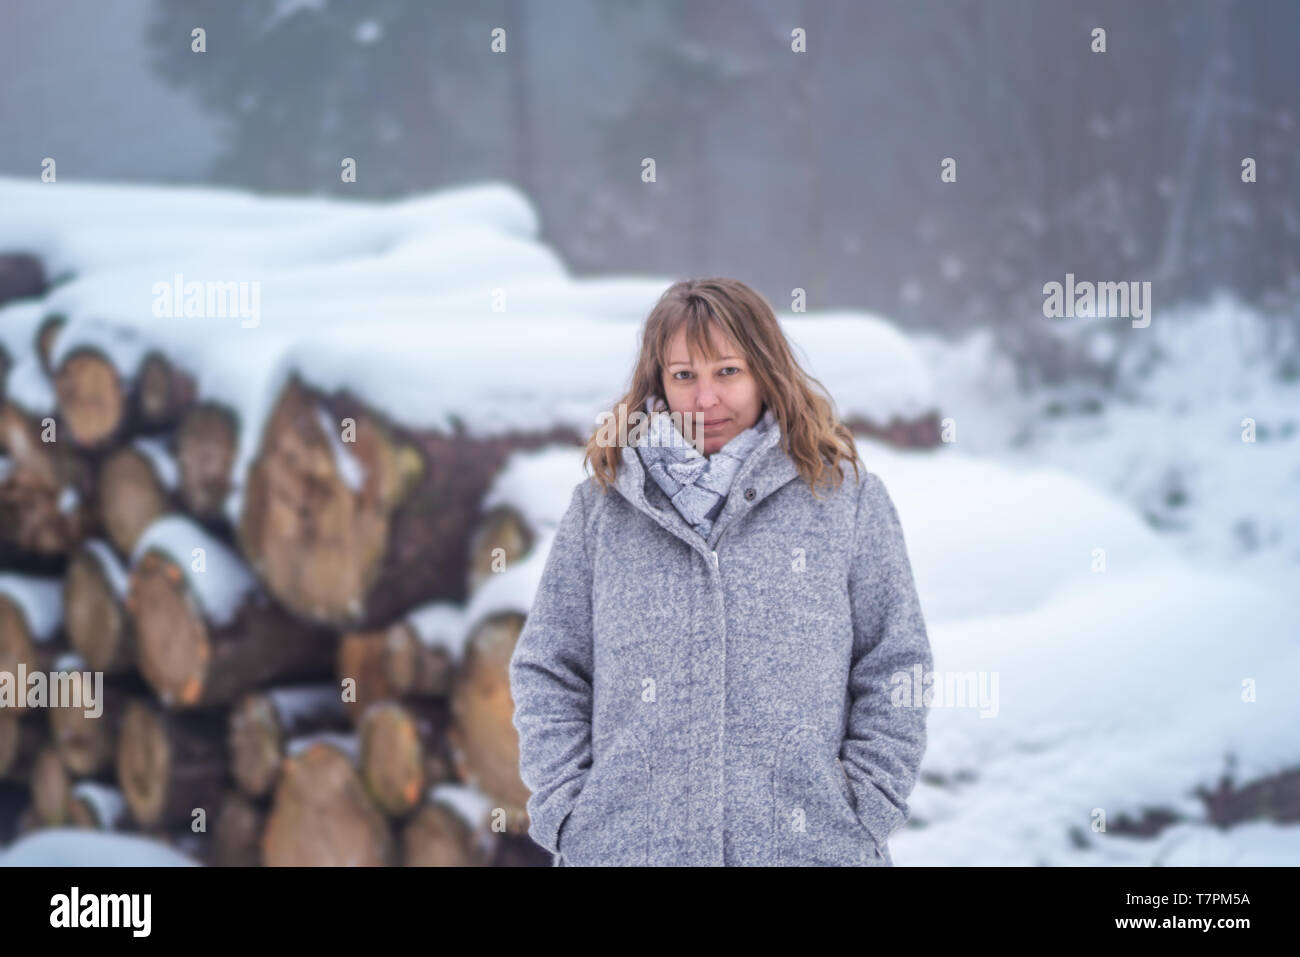 Una mujer rubia, de 40 años de edad está de pie en el paisaje invernal. Ella está sonriendo ante la cámara. La mujer viste un abrigo de lana gris claro y una bufanda. En el b Foto de stock